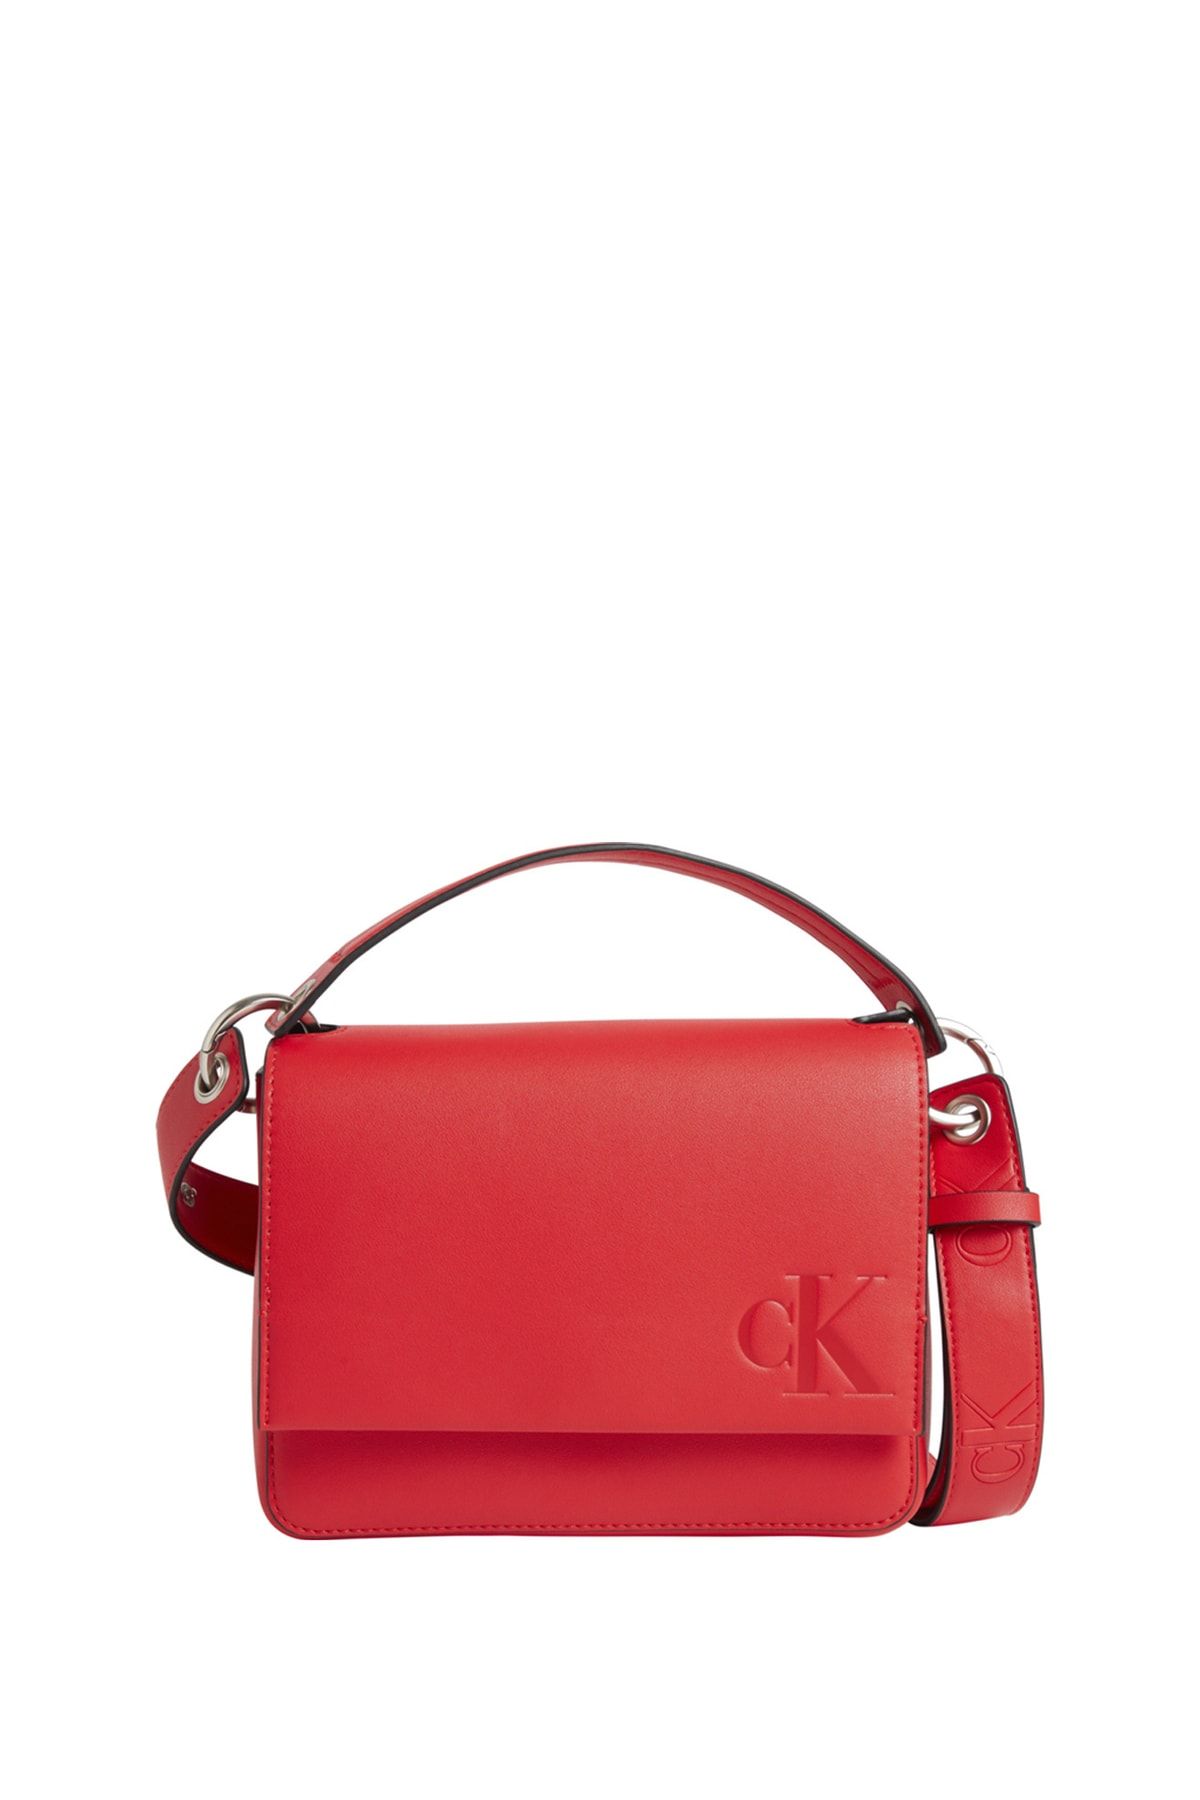 Calvin Klein Handbag - Red - With Slogan - Trendyol